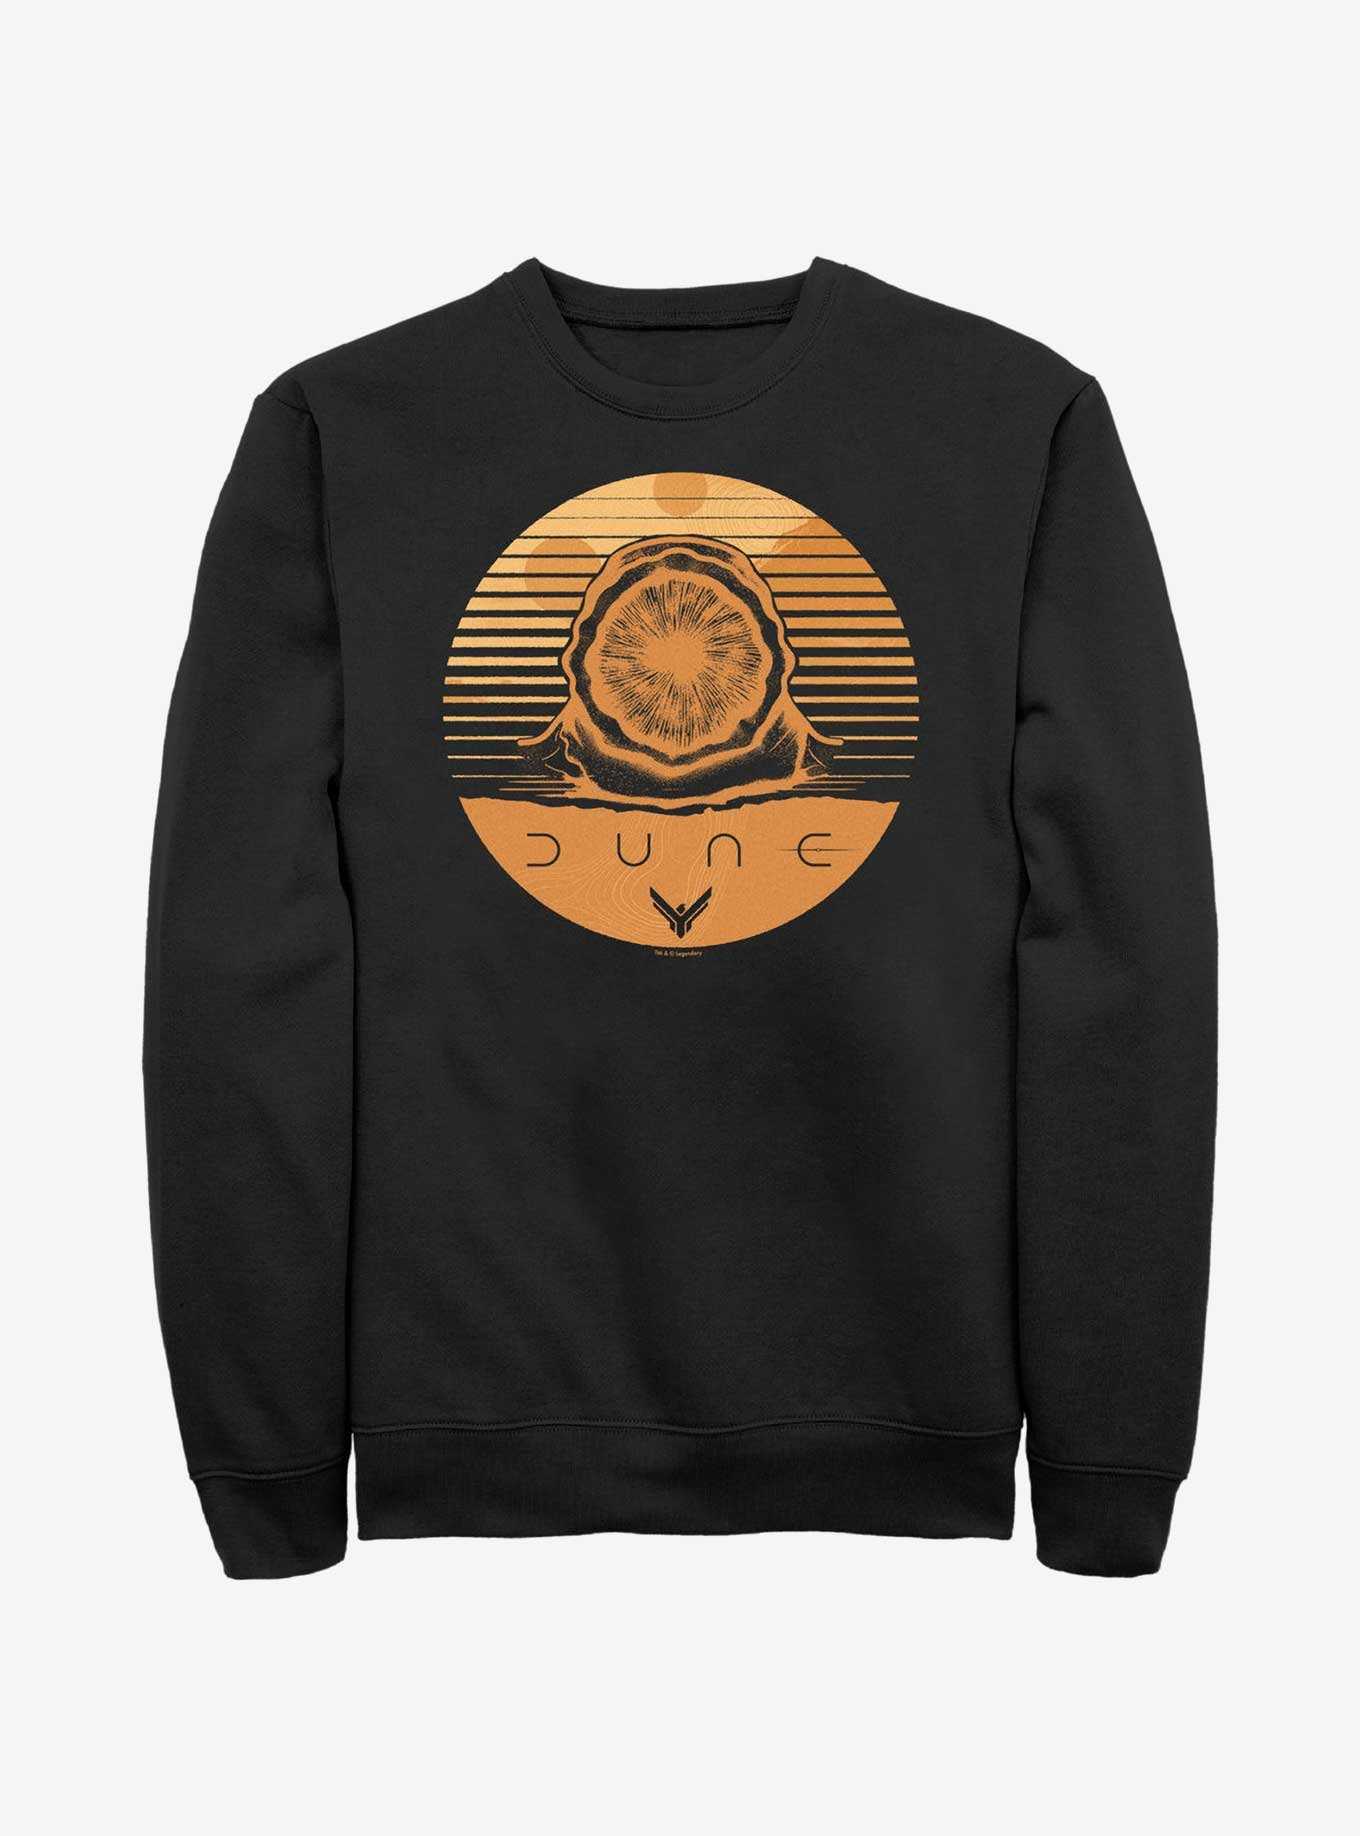 Dune: Part Two Arrakis Sandworm Stamp Sweatshirt, , hi-res